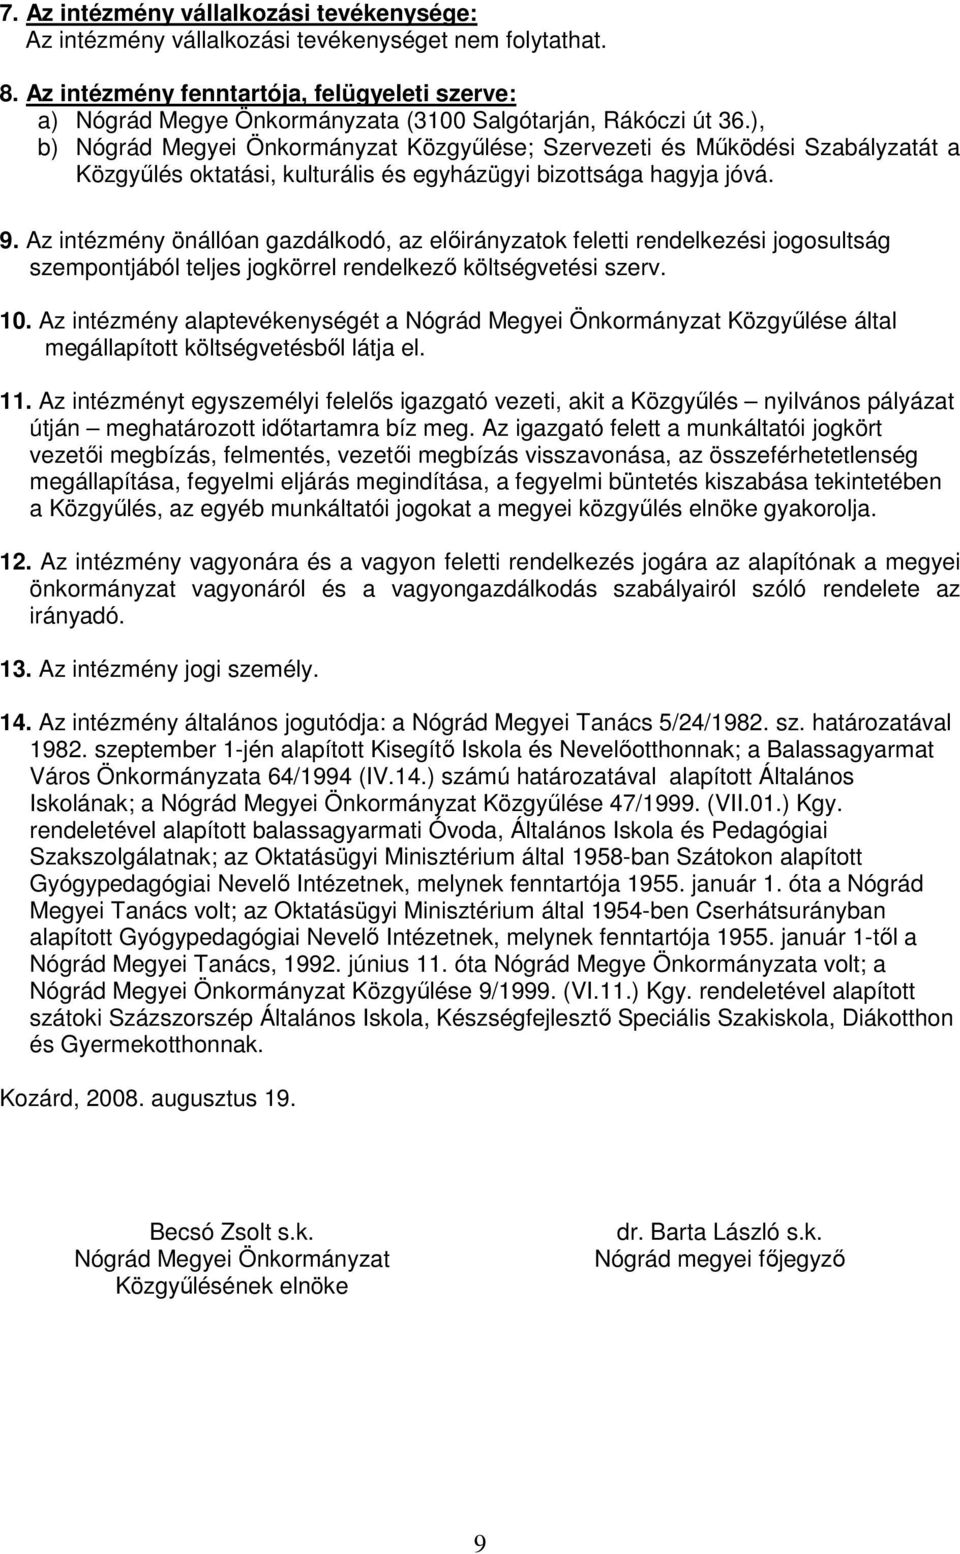 ), b) Nógrád Megyei Önkormányzat Közgyőlése; Szervezeti és Mőködési Szabályzatát a Közgyőlés oktatási, kulturális és egyházügyi bizottsága hagyja jóvá. 9.